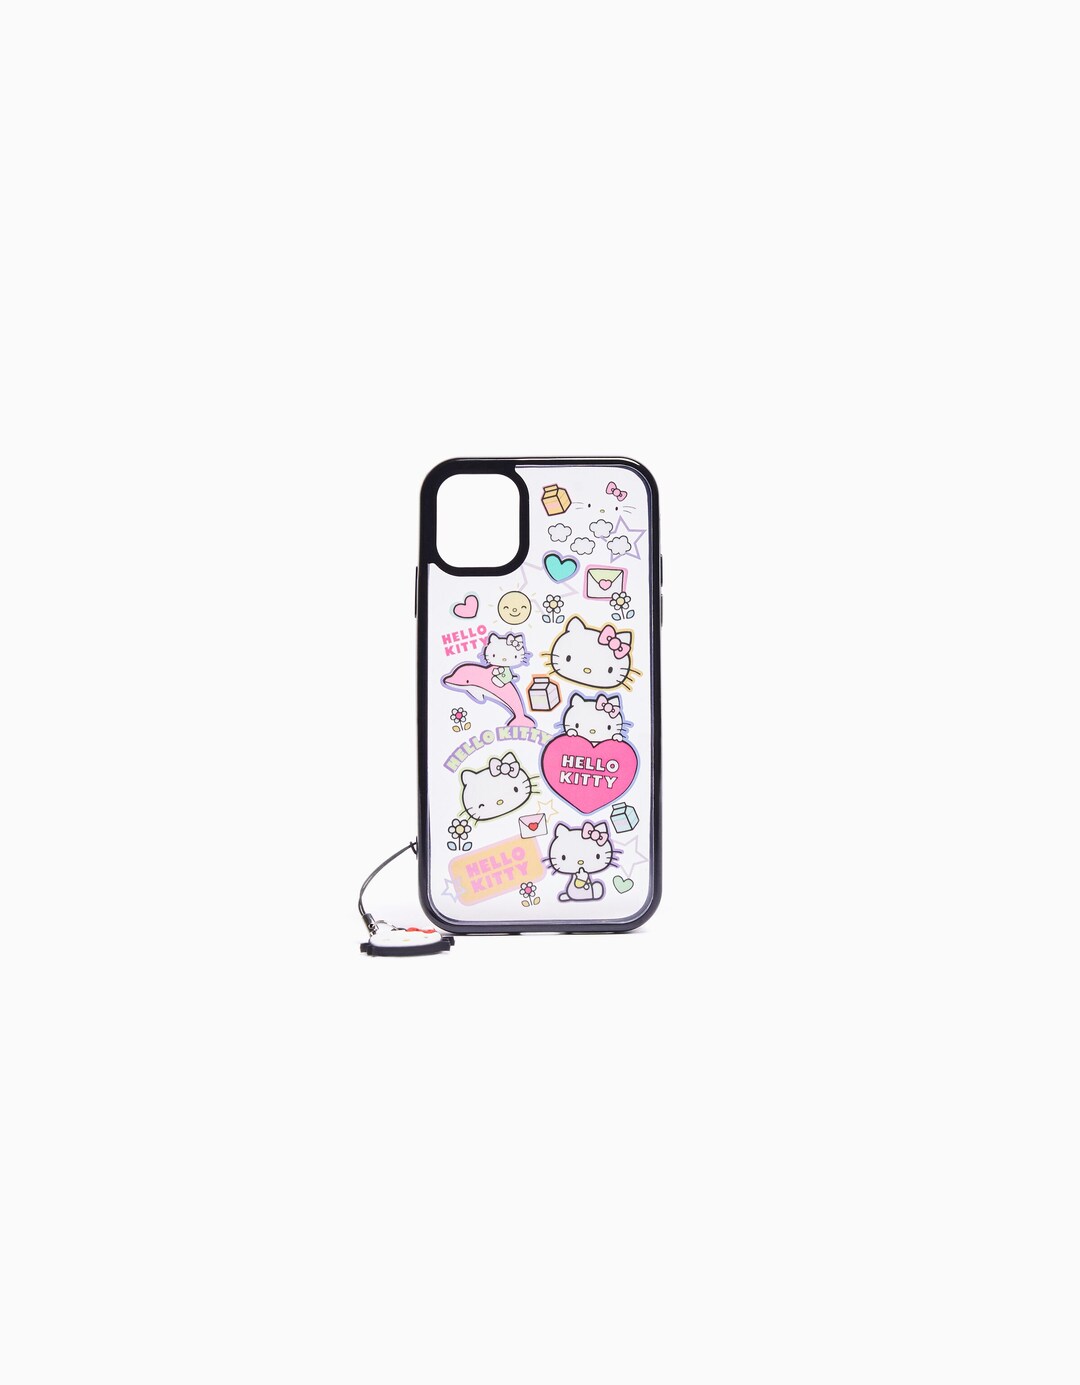 כיסוי לטלפון נייד iPhone עם קמע Hello Kitty